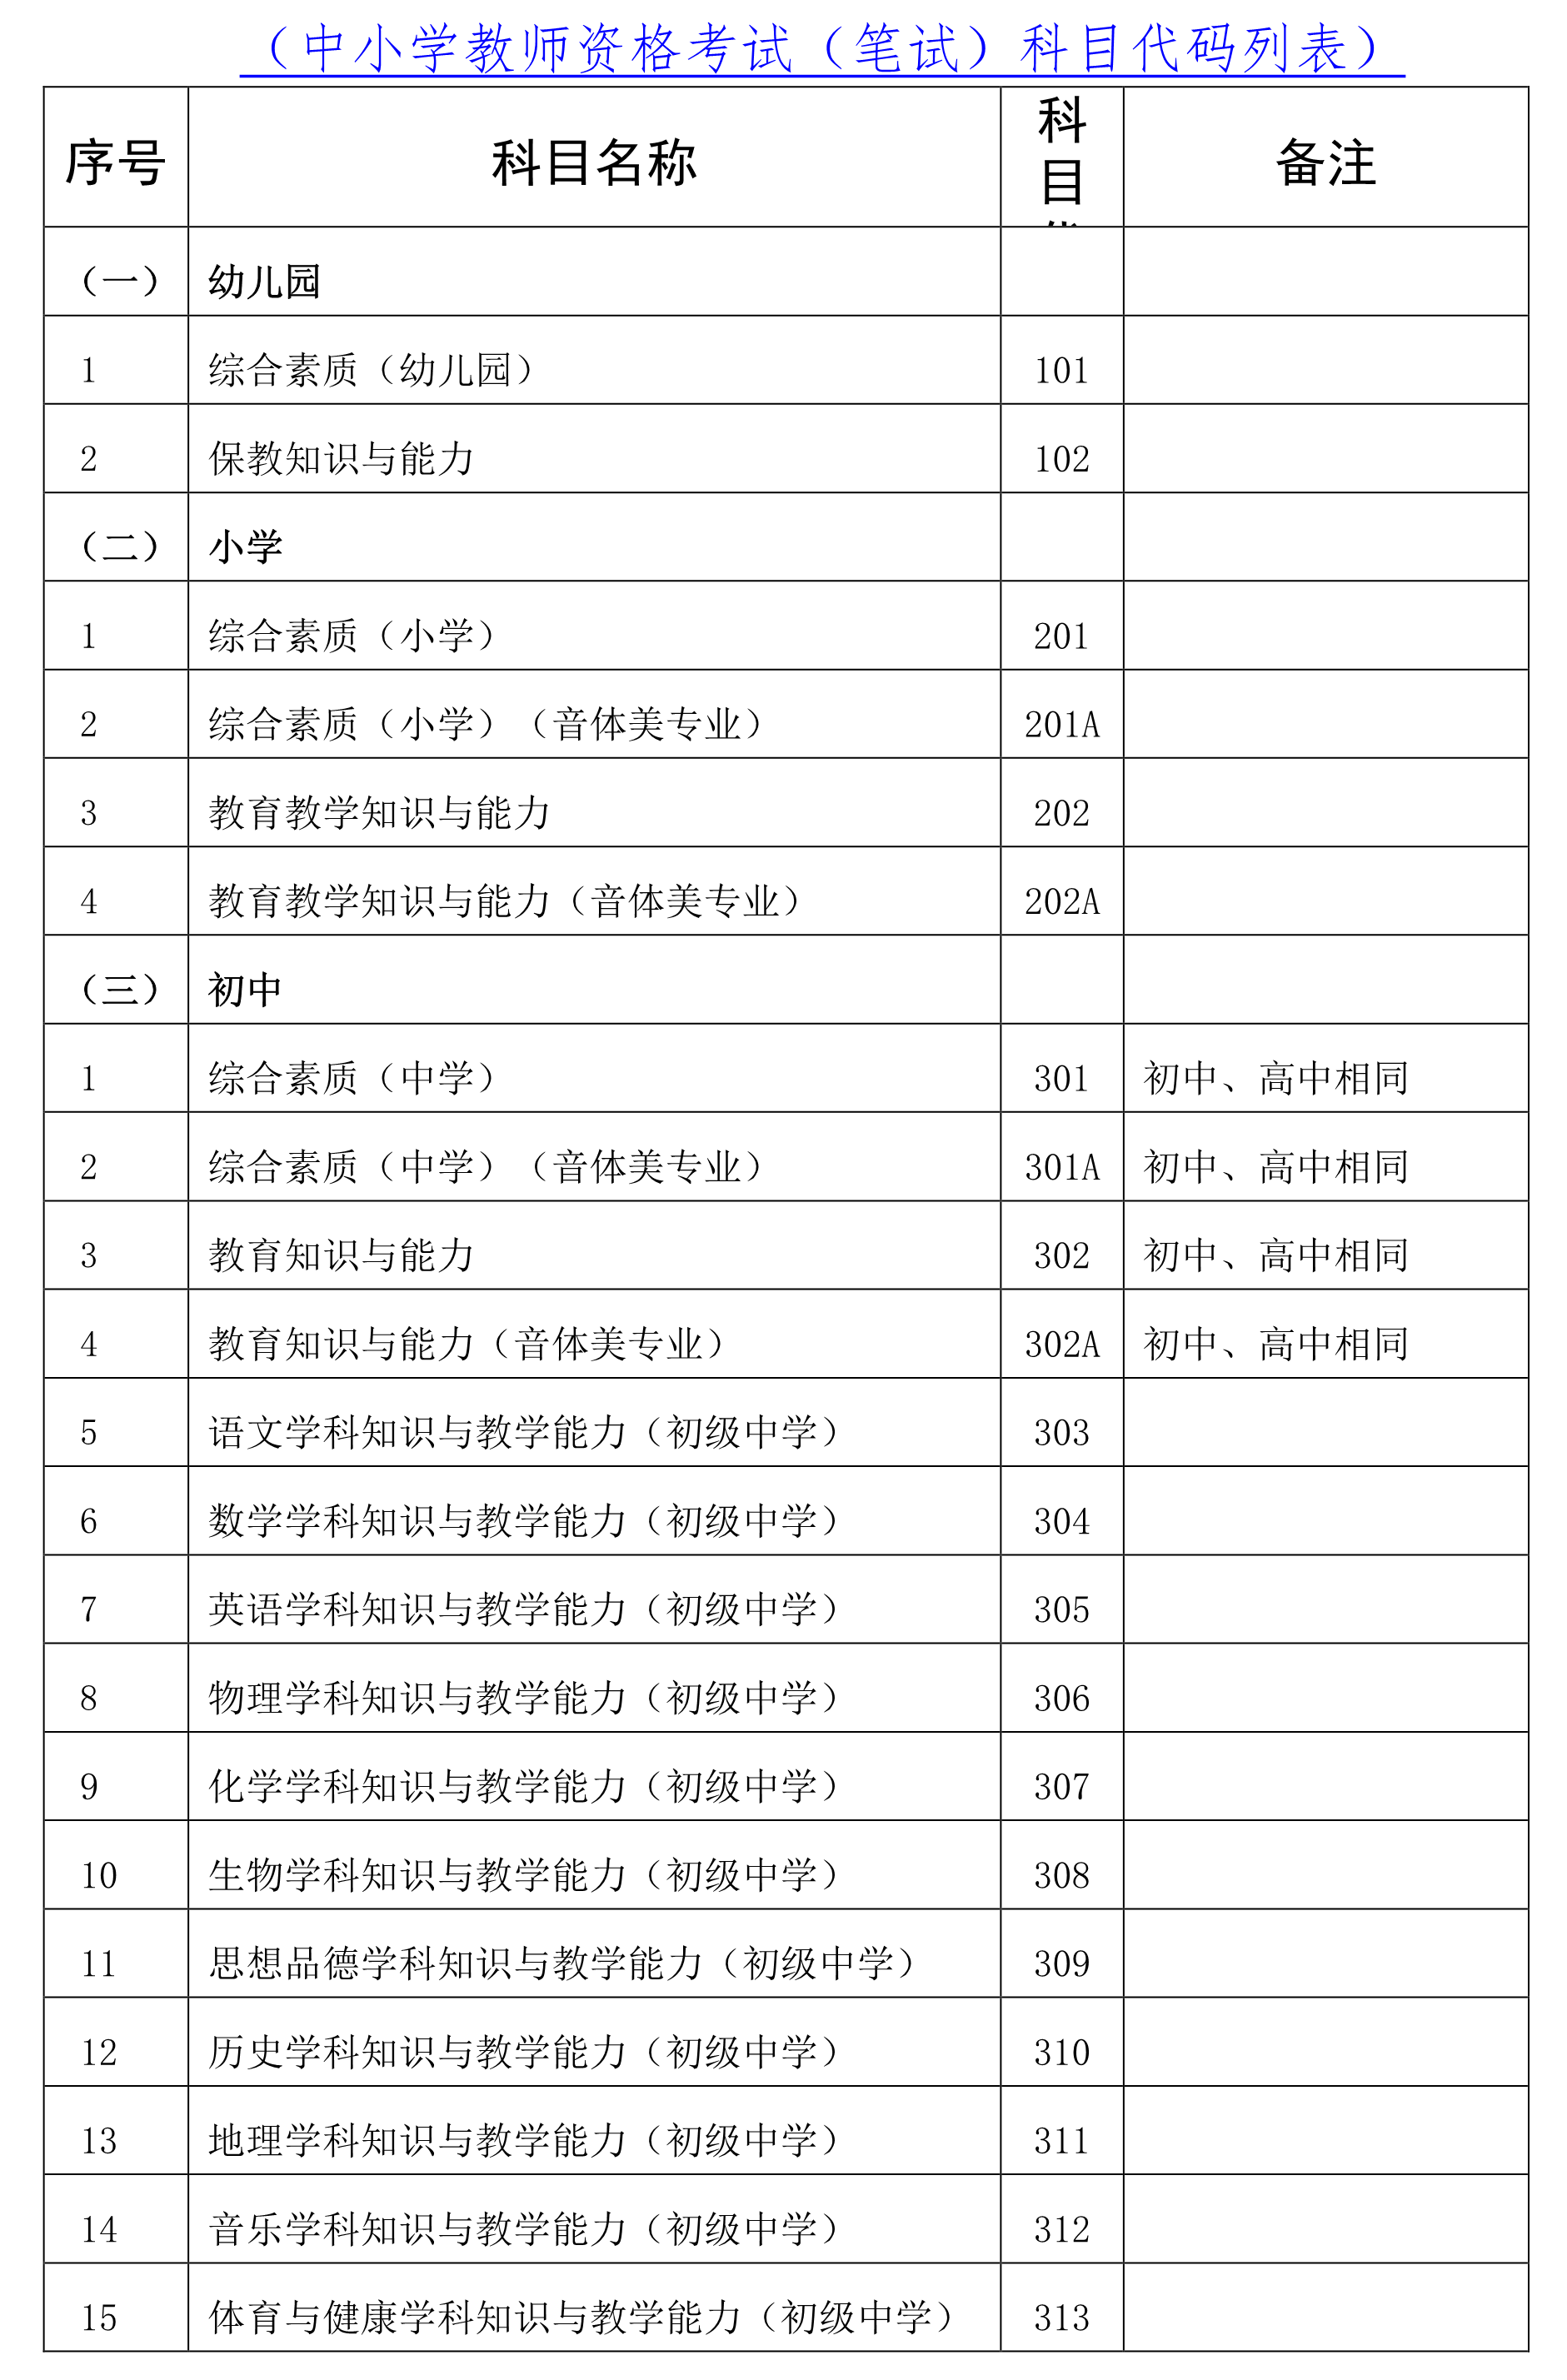 海南省2020年下半年教师资格考试笔试公告